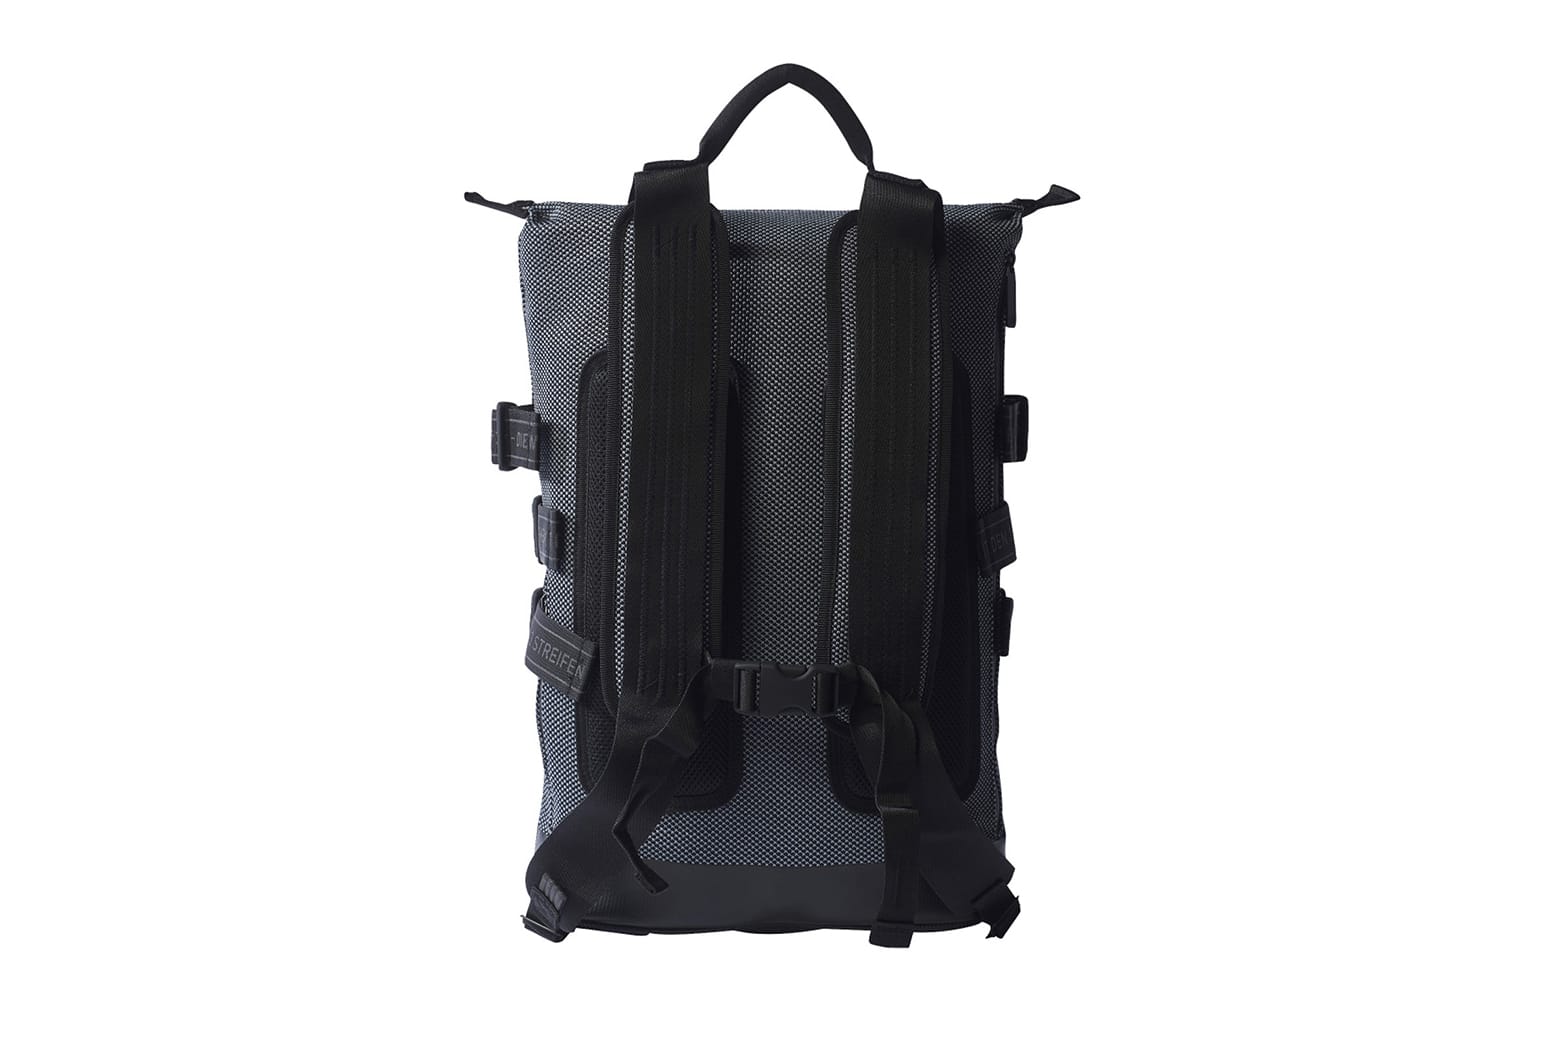 NMD Primeknit Backpack | HYPEBEAST